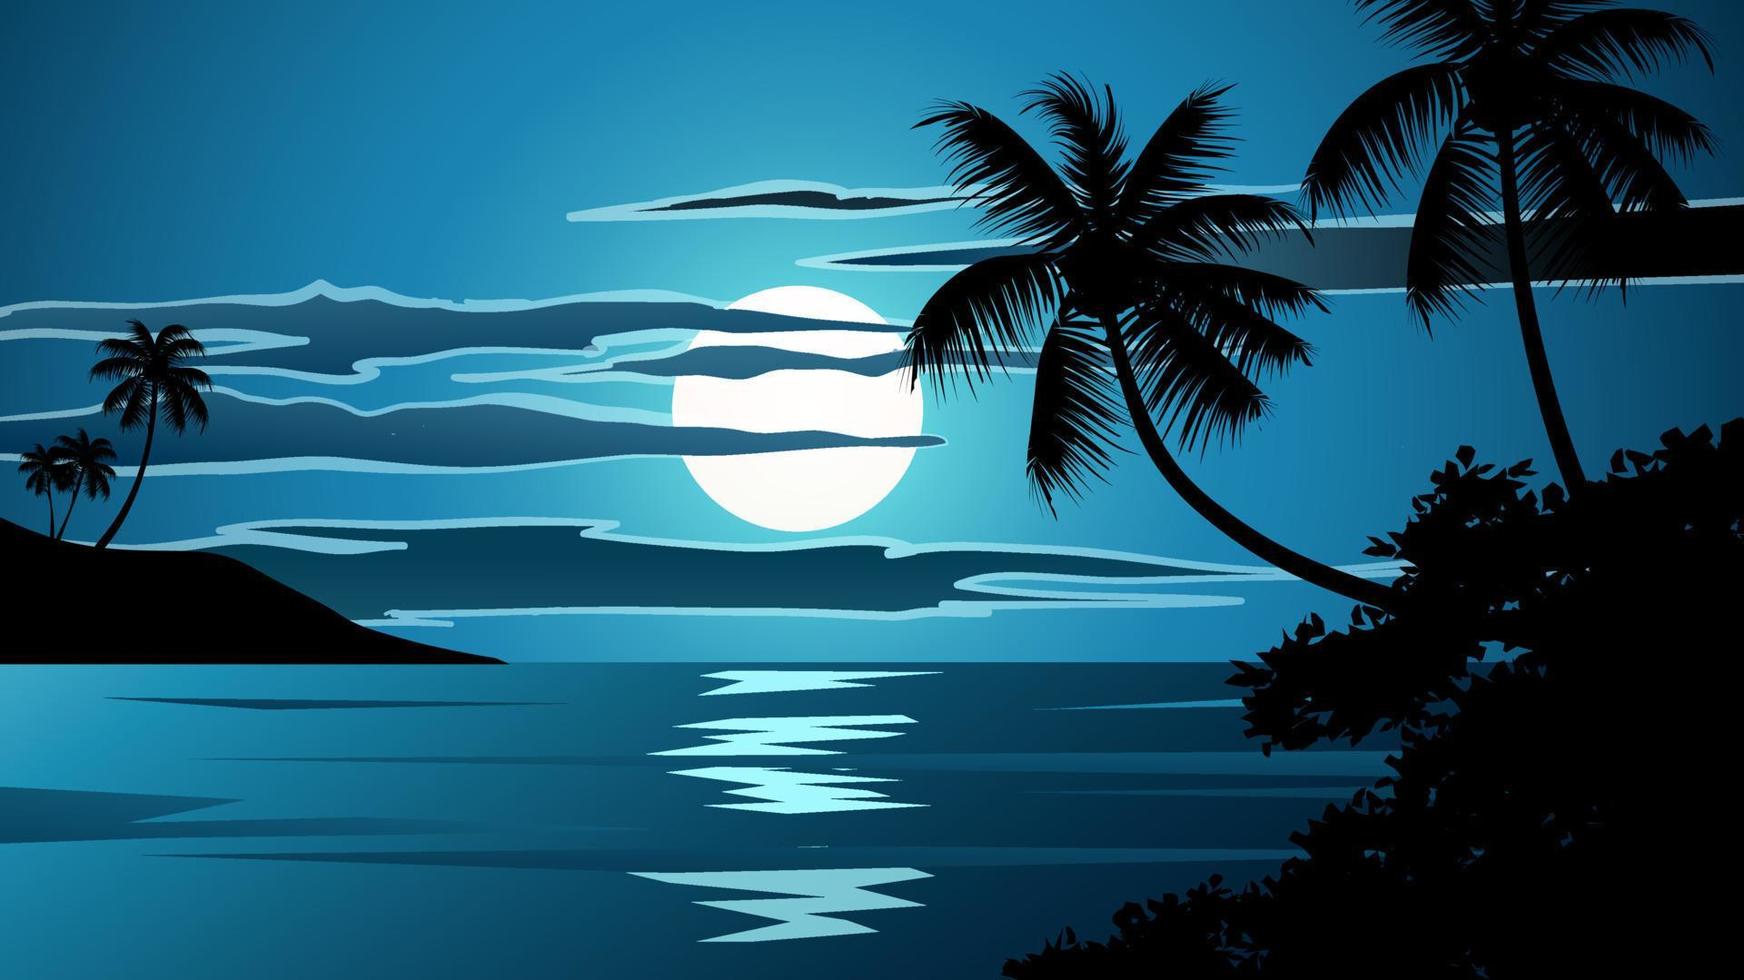 Kokospalmen Silhouette bei Nacht Natur Hintergrund mit Mond und Wolken vektor